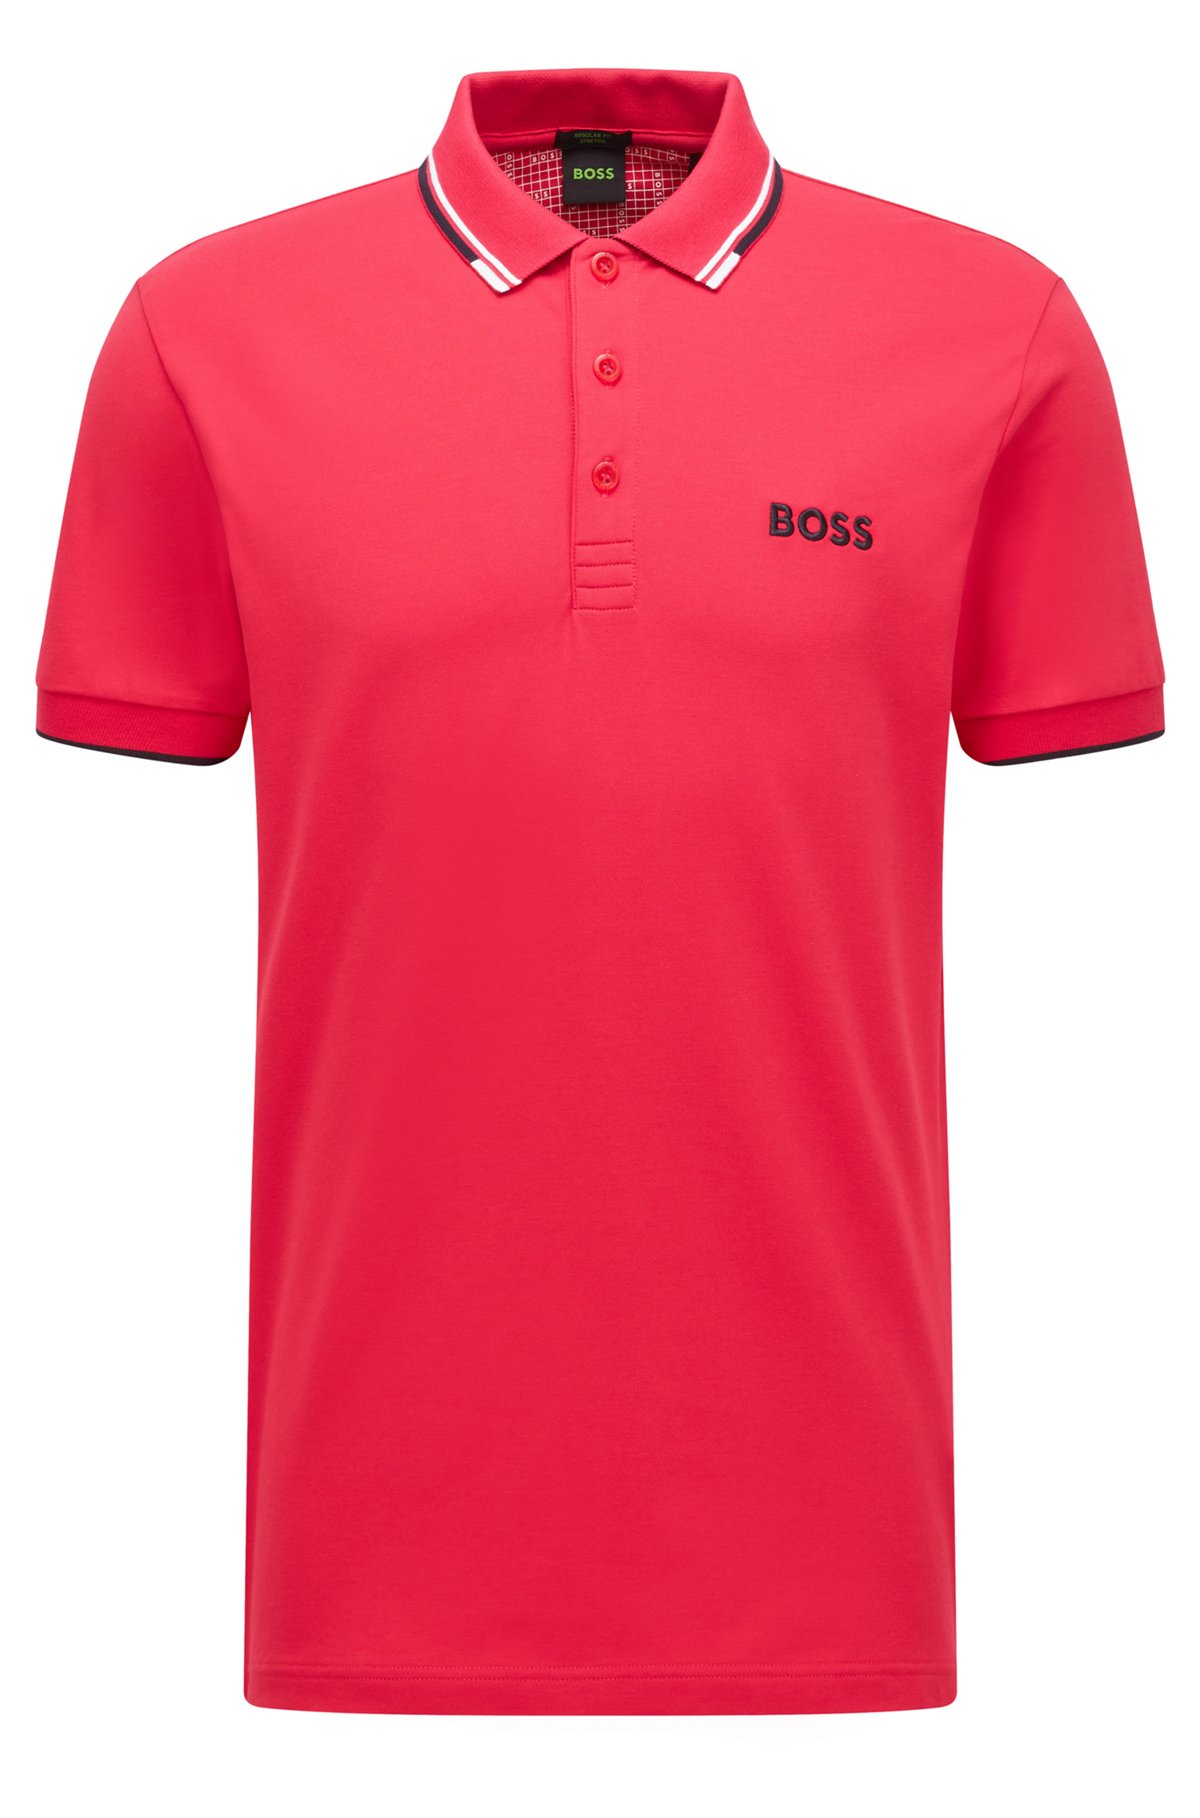 Moralsk skille sig ud stakåndet BOSS - Cotton-blend polo shirt with contrast details